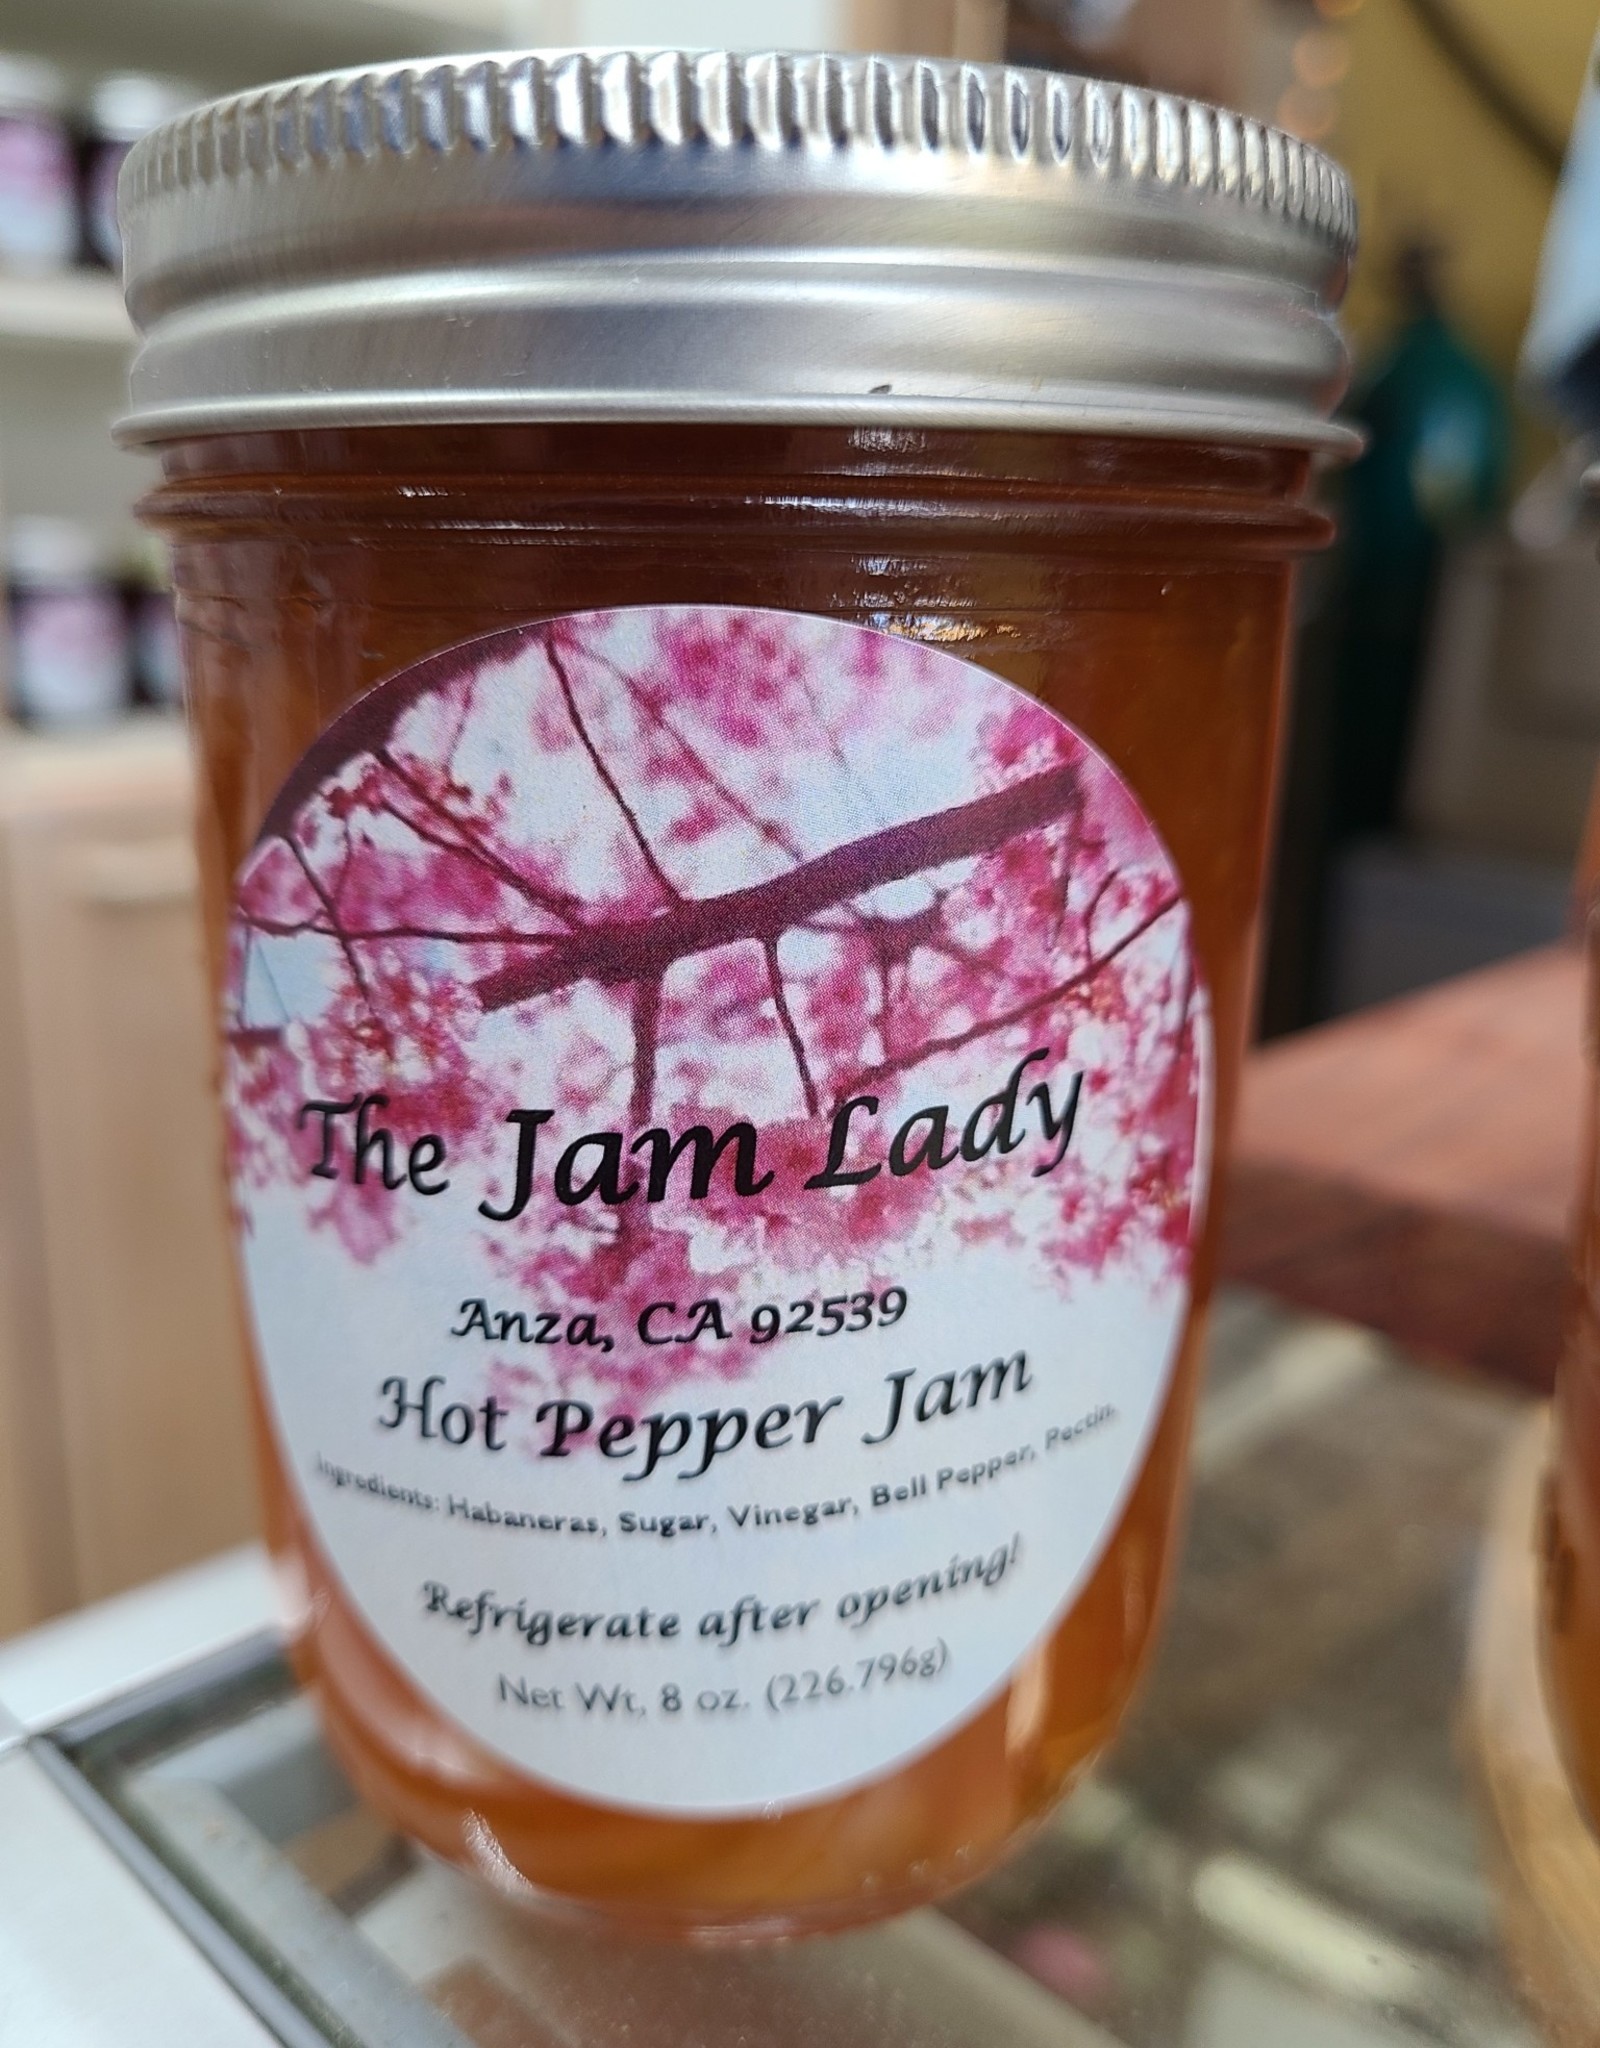 Hot Pepper Jam (habenero)